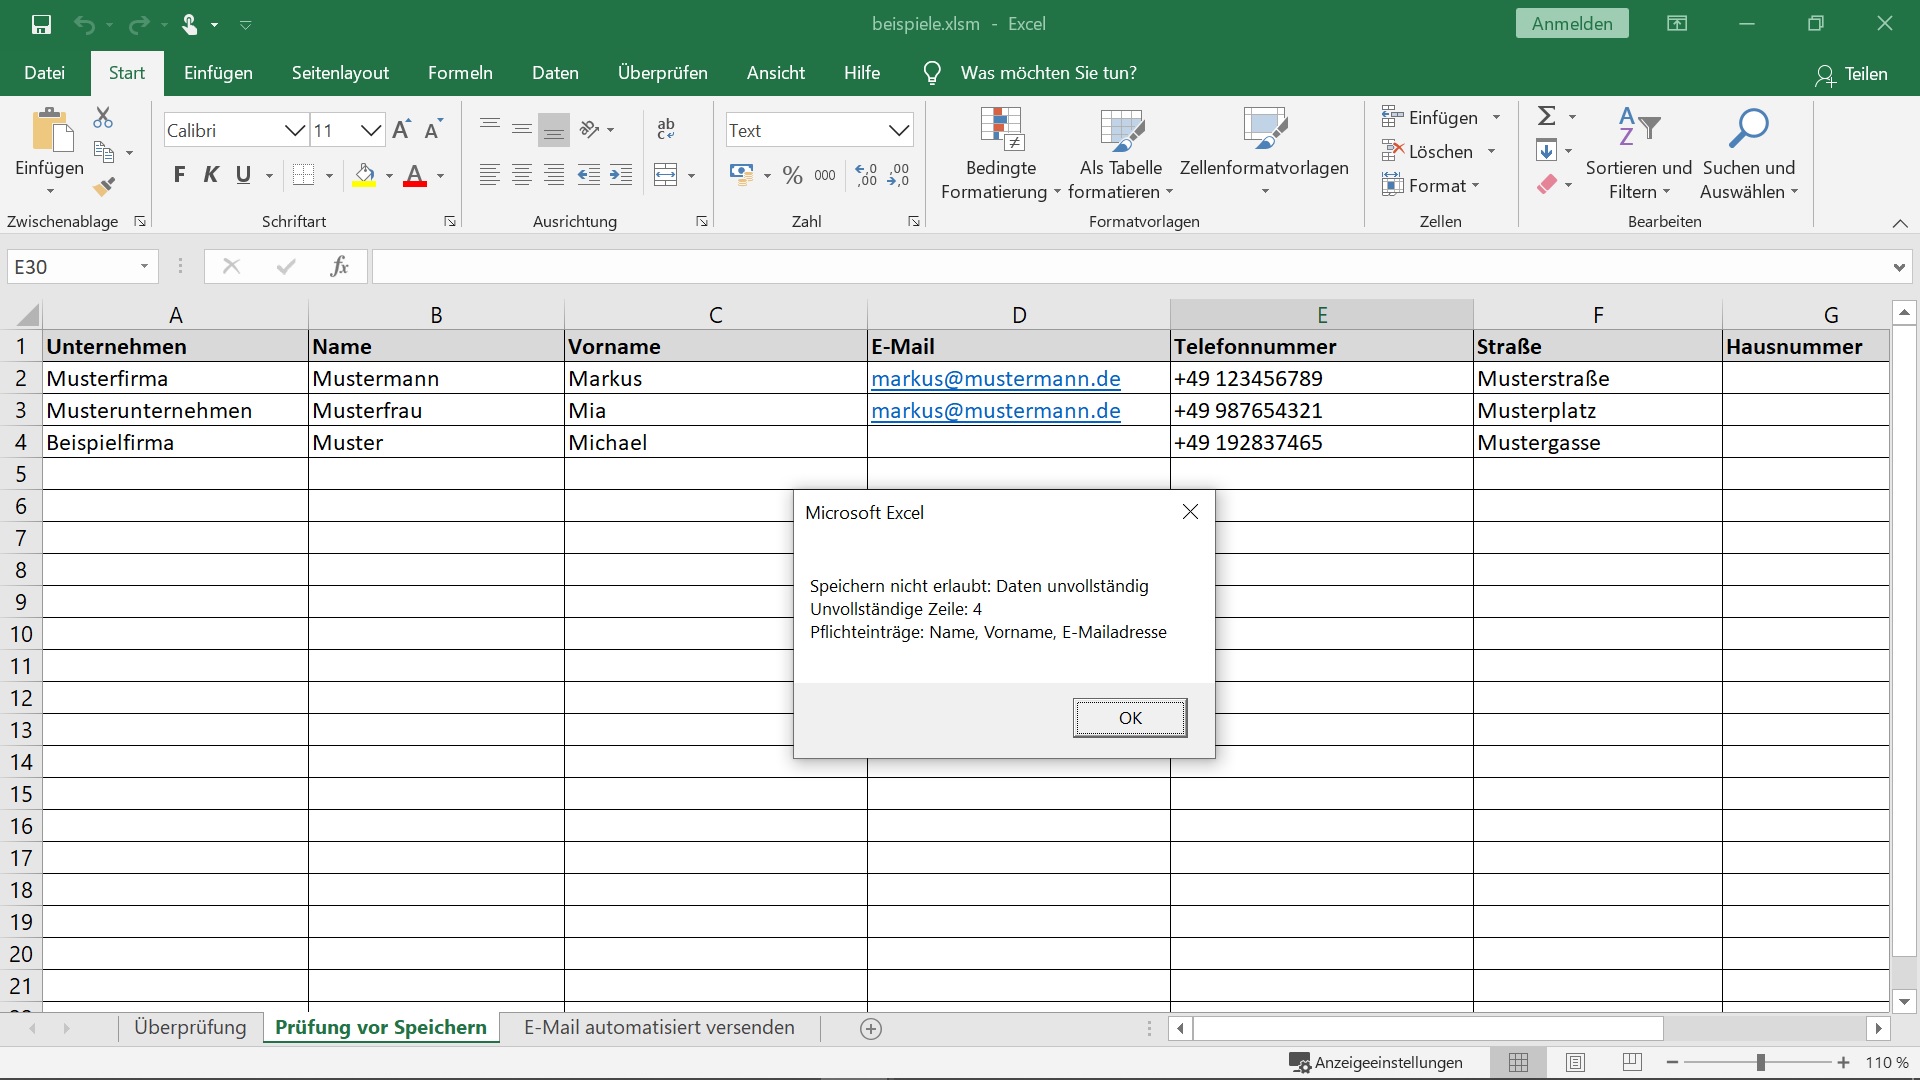 Verhindern des Speicherns oder Schließen einer Excel Datei, bis alle benötigten Felder ausgefüllt sind